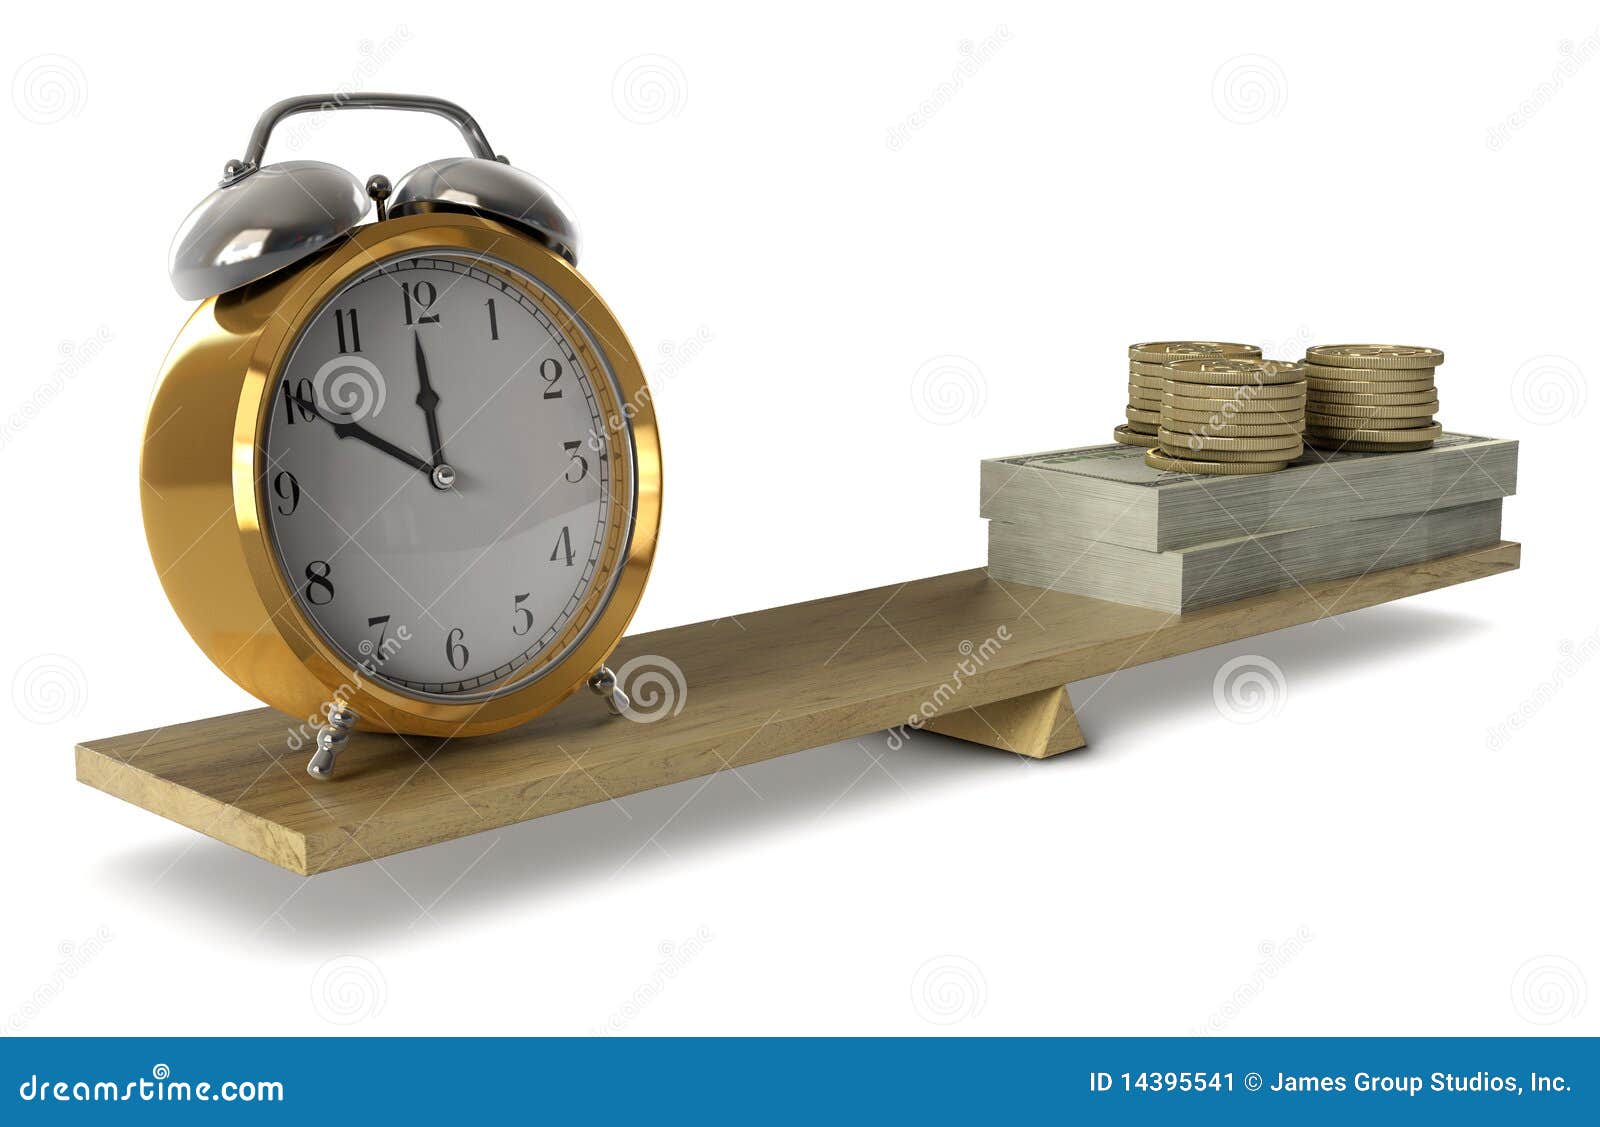 χρόνος χρημάτων. ίσος ρολογιών ισορροπίας που κρατά το αριστερό χρημάτων απόθεμα κλιμάκων φωτογραφιών σωστό